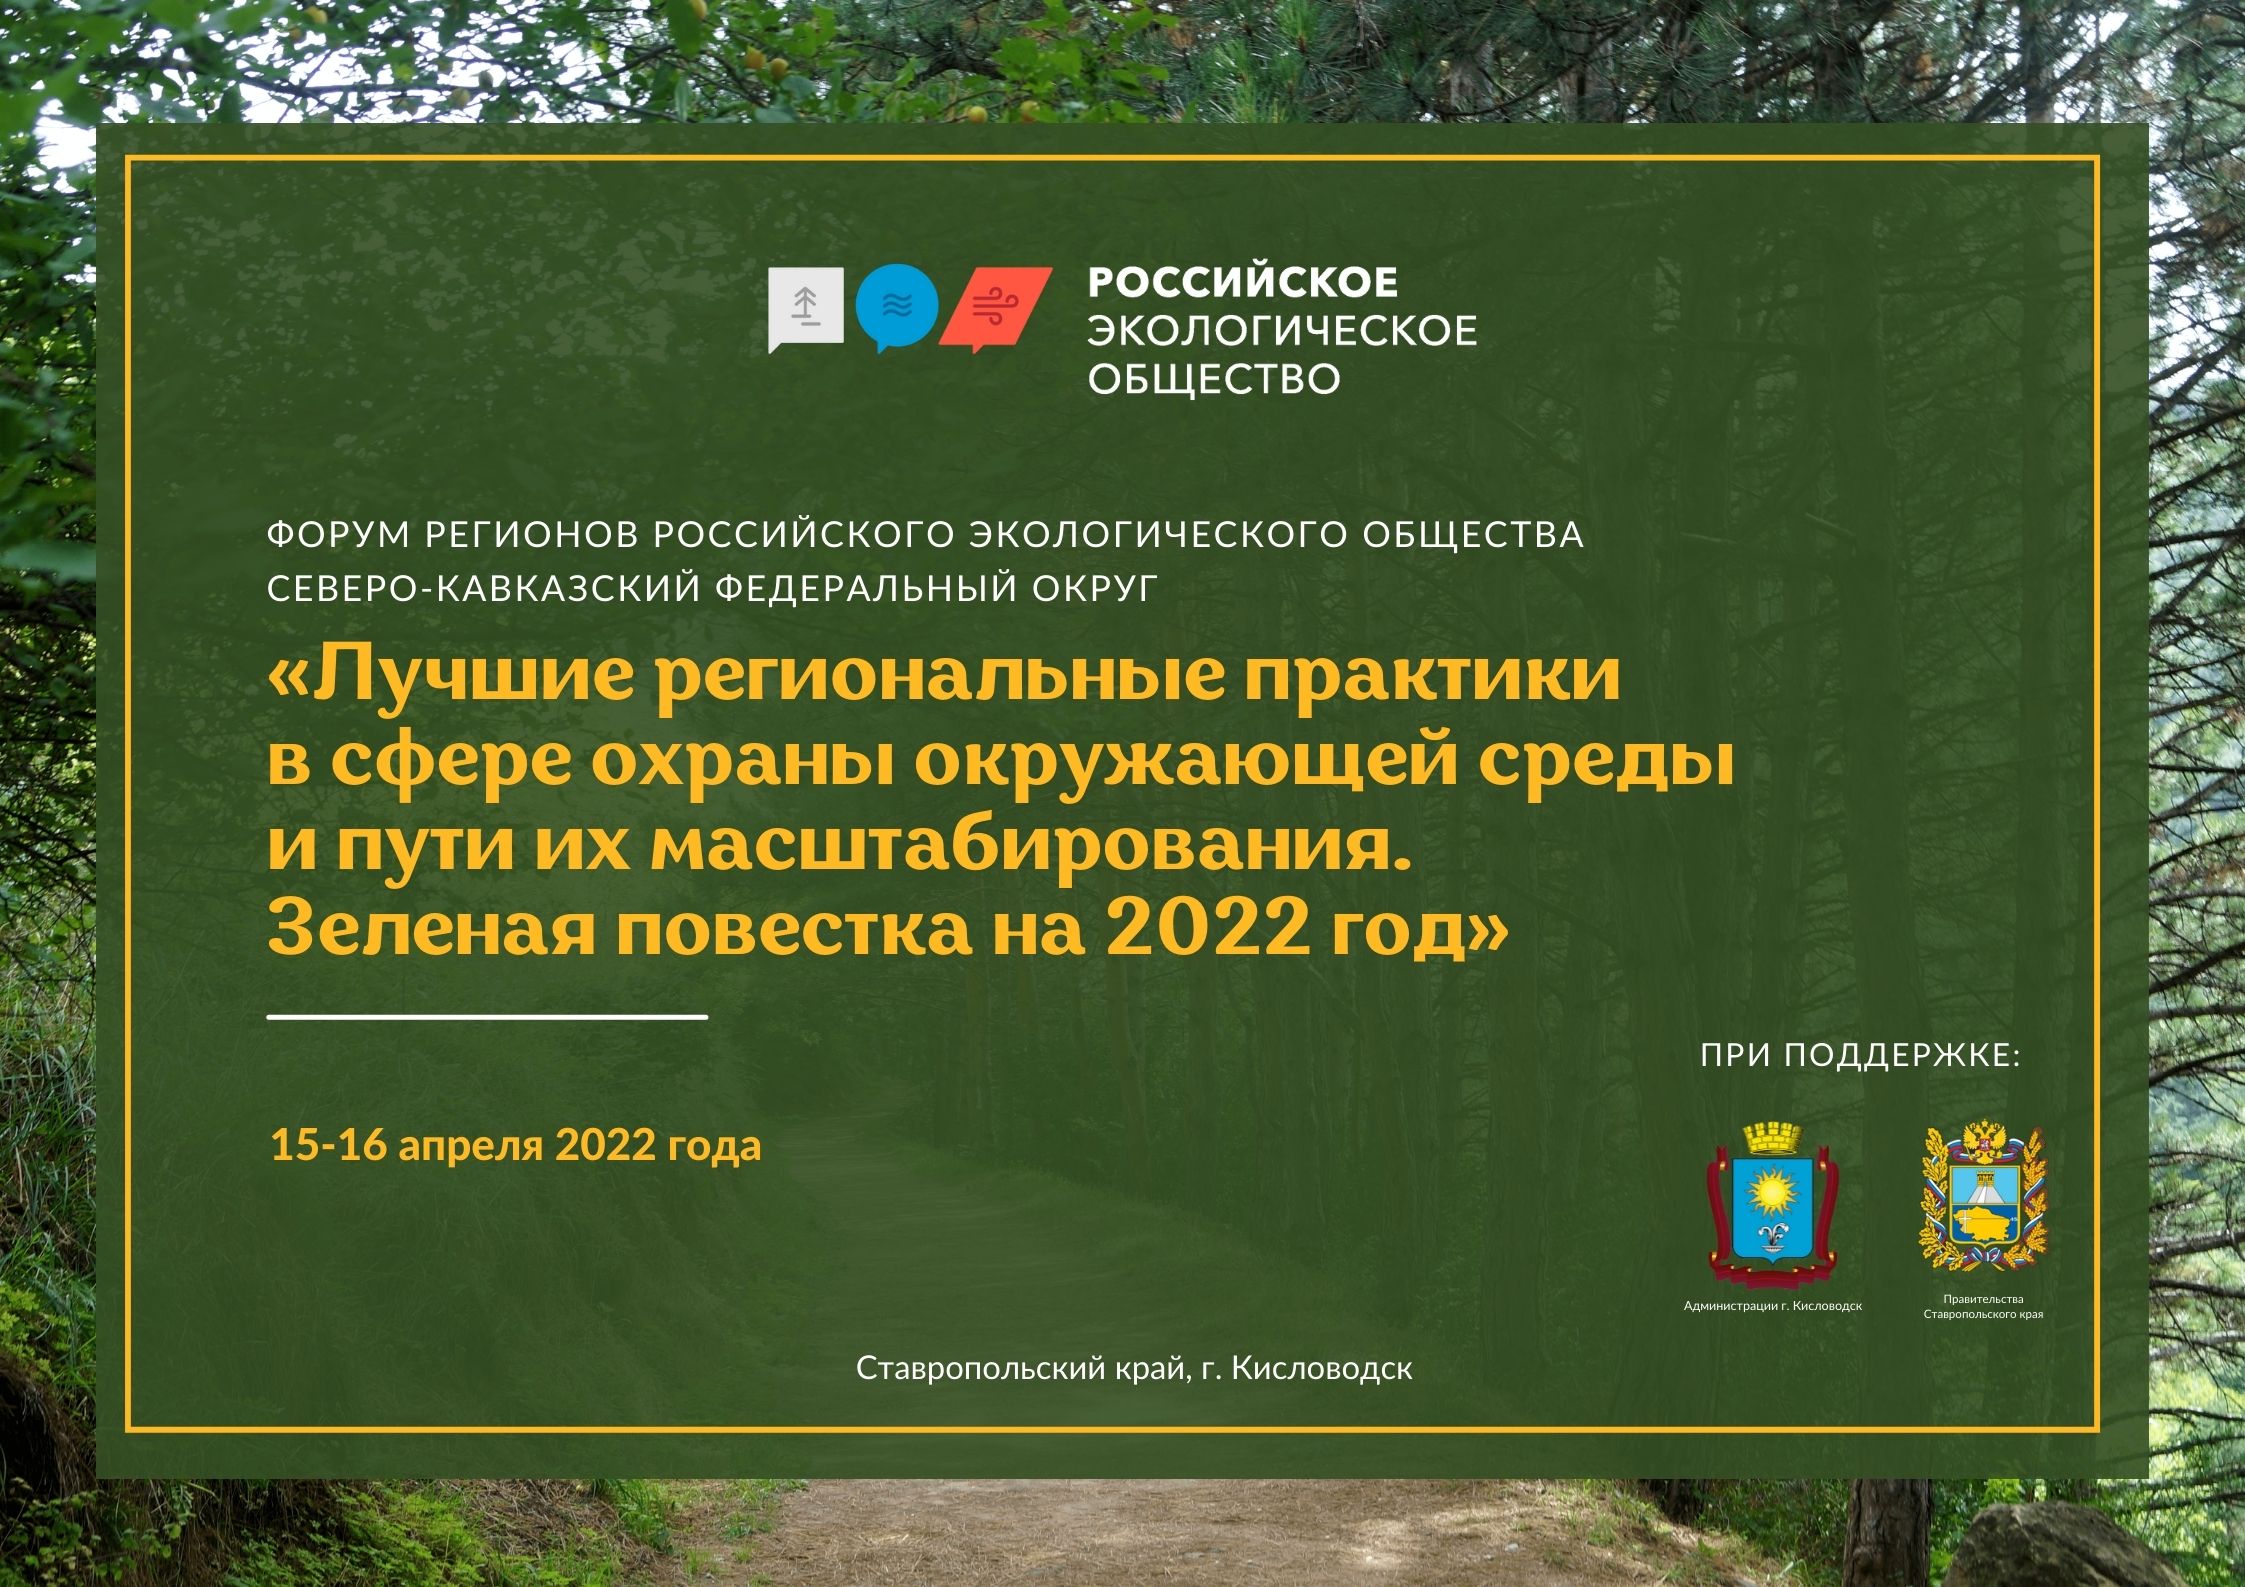 В Российском экологическом обществе состоится Форум регионов - Северо-Кавказский федеральный округ